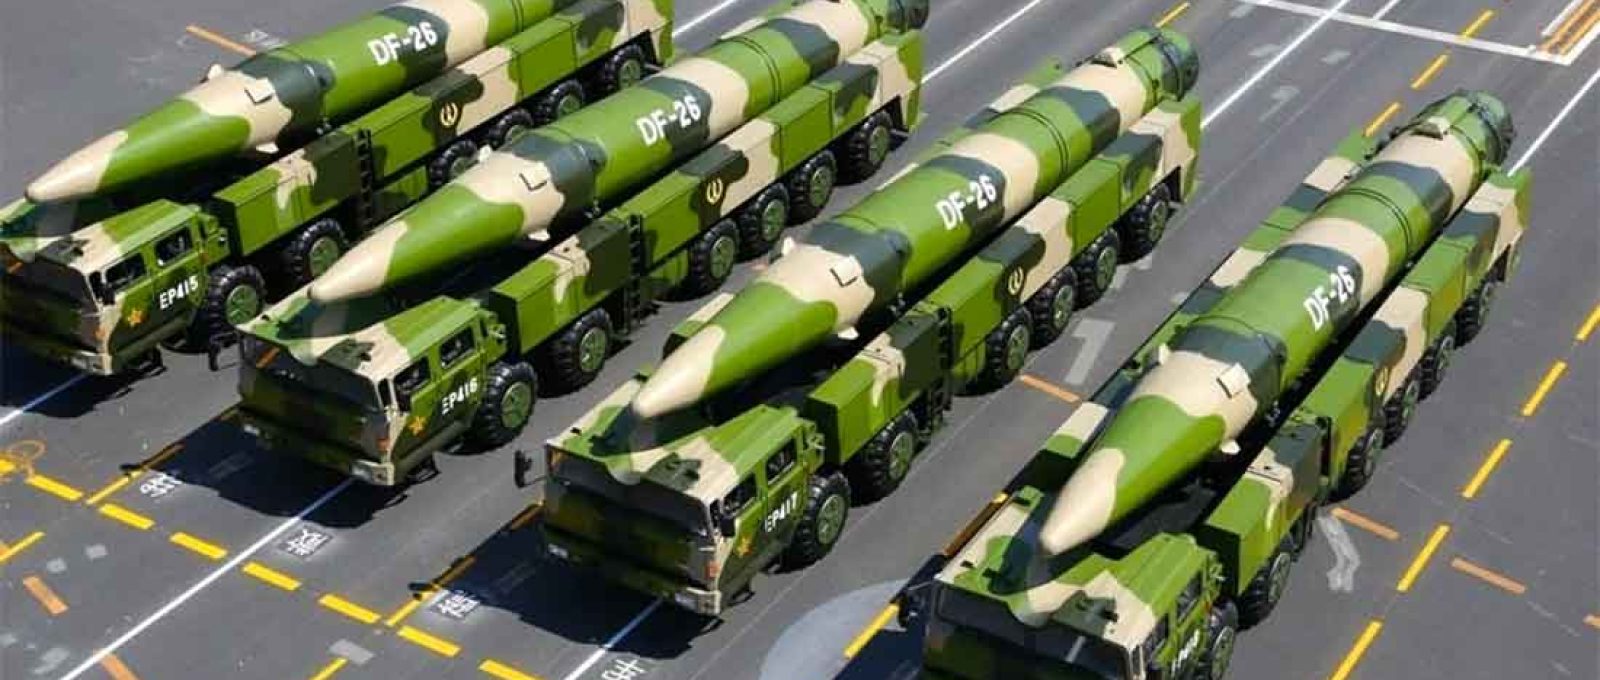 Veículos lançadores de mísseis balísticos DF-26 chineses (Foto: Xinhua).